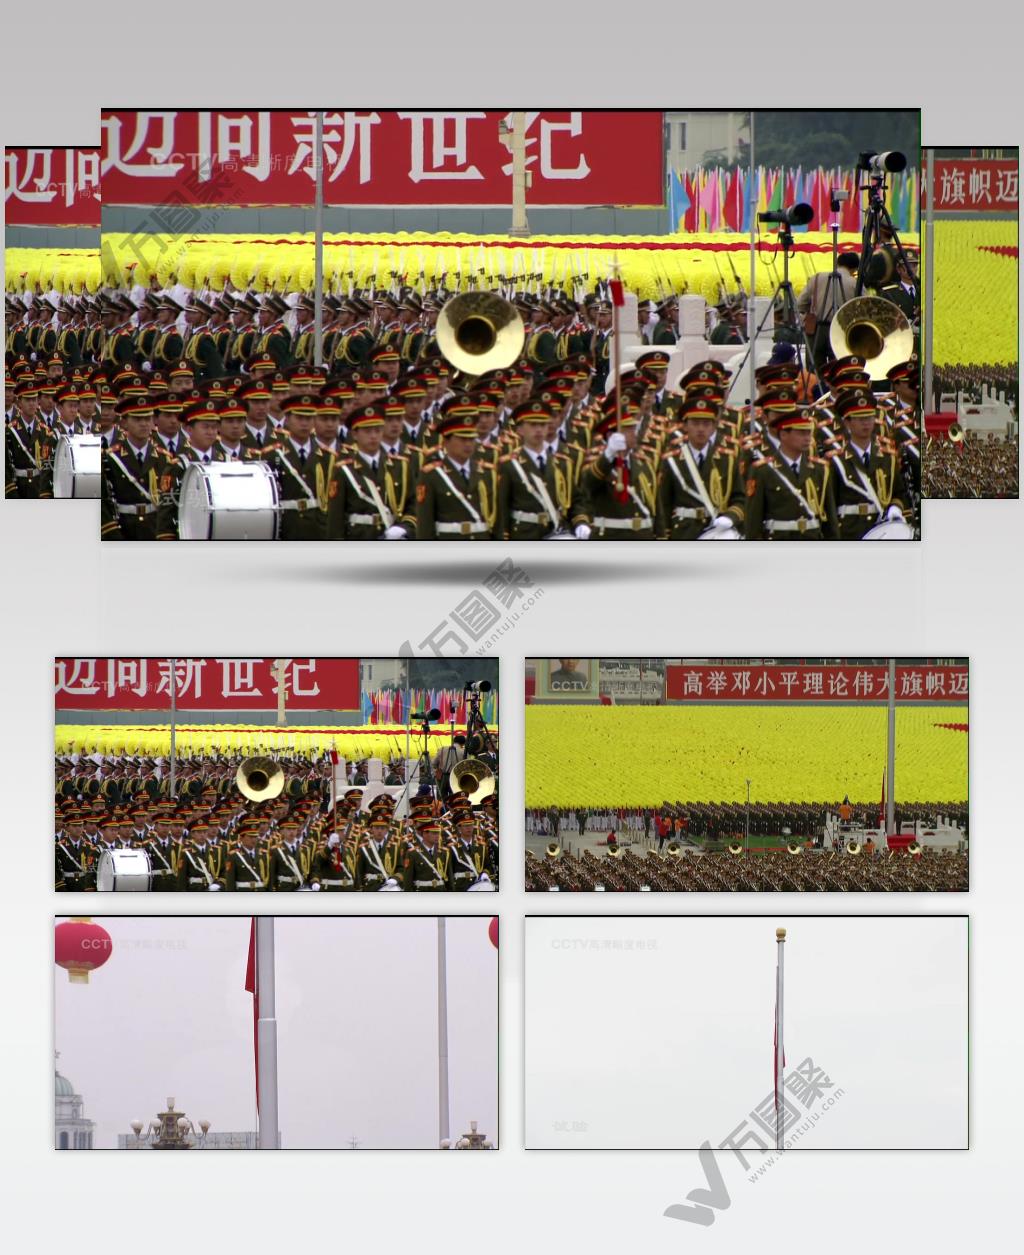 国庆周年年阅兵-国庆50周年1999年阅兵片段_batch中国高清实拍素材宣传片